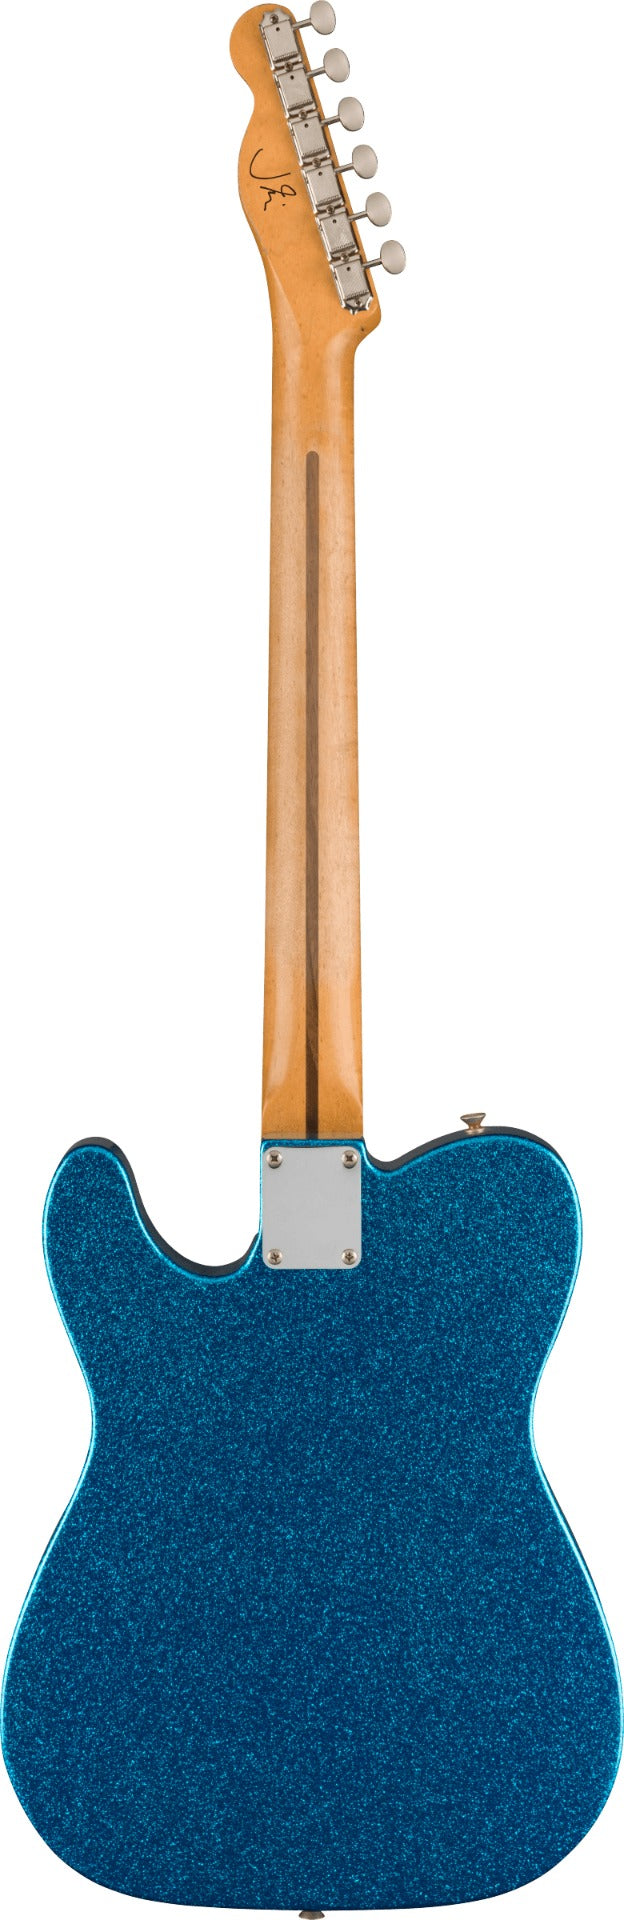 Fender J Mascis Telecaster Electric Guitar in Bottle Rocket Blue Flake